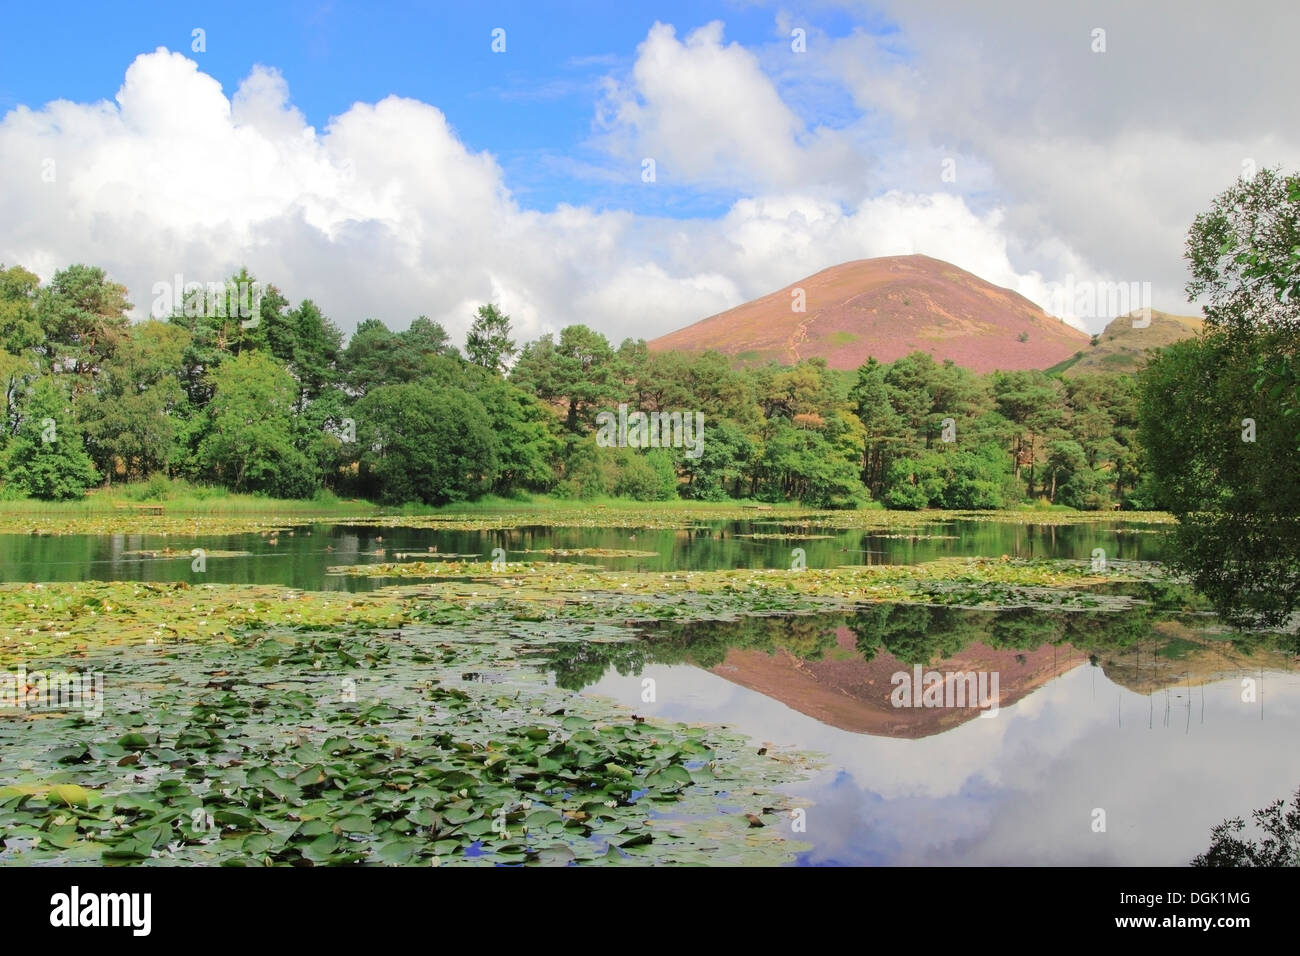 Bowdenmoor oder Bowden Moor Reservoir & Eildon Hills, Bowden, Grenzen County, Schottland, UK Stockfoto